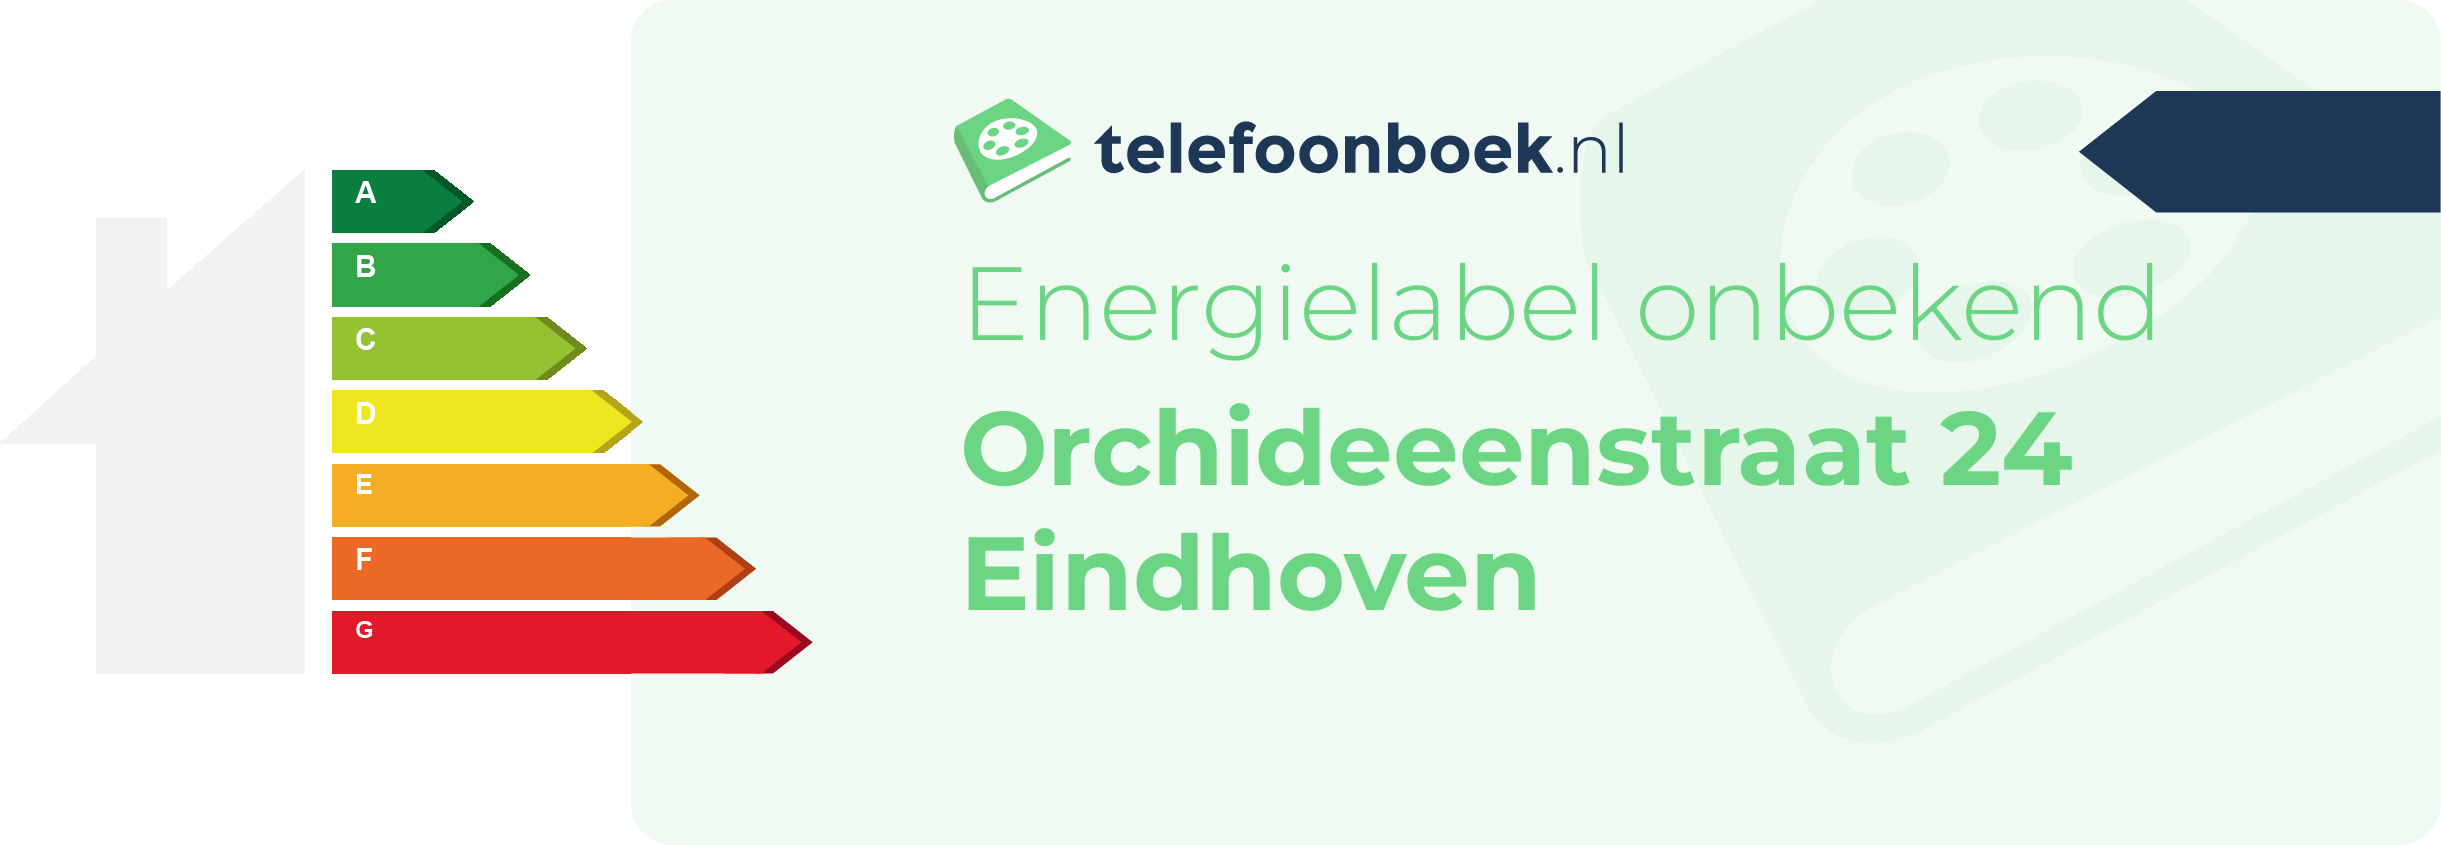 Energielabel Orchideeenstraat 24 Eindhoven